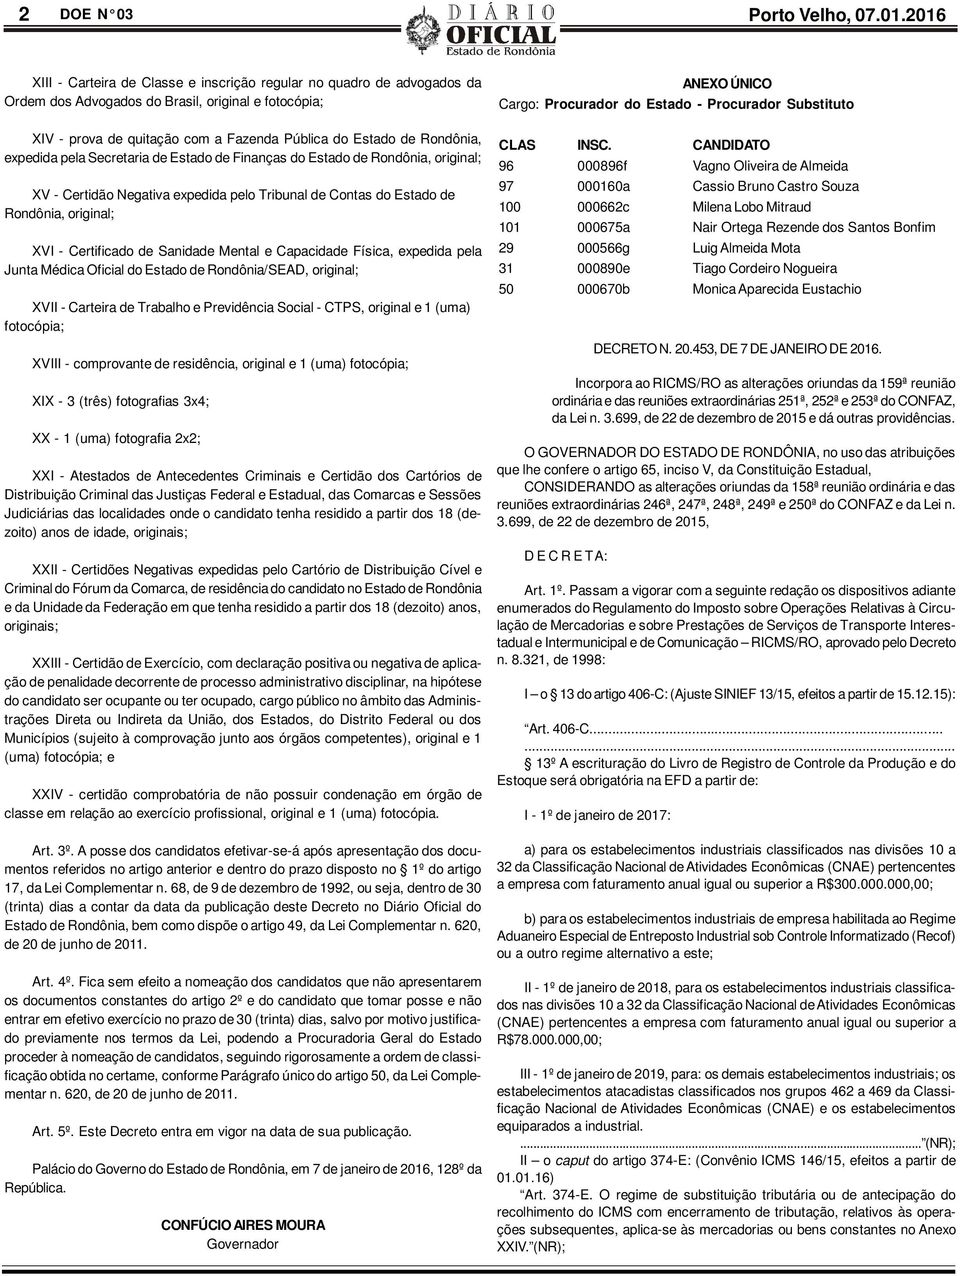 expedida pela Secretaria de Estado de Finanças do Estado de Rondônia, original; XV - Certidão Negativa expedida pelo Tribunal de Contas do Estado de Rondônia, original; XVI - Certificado de Sanidade